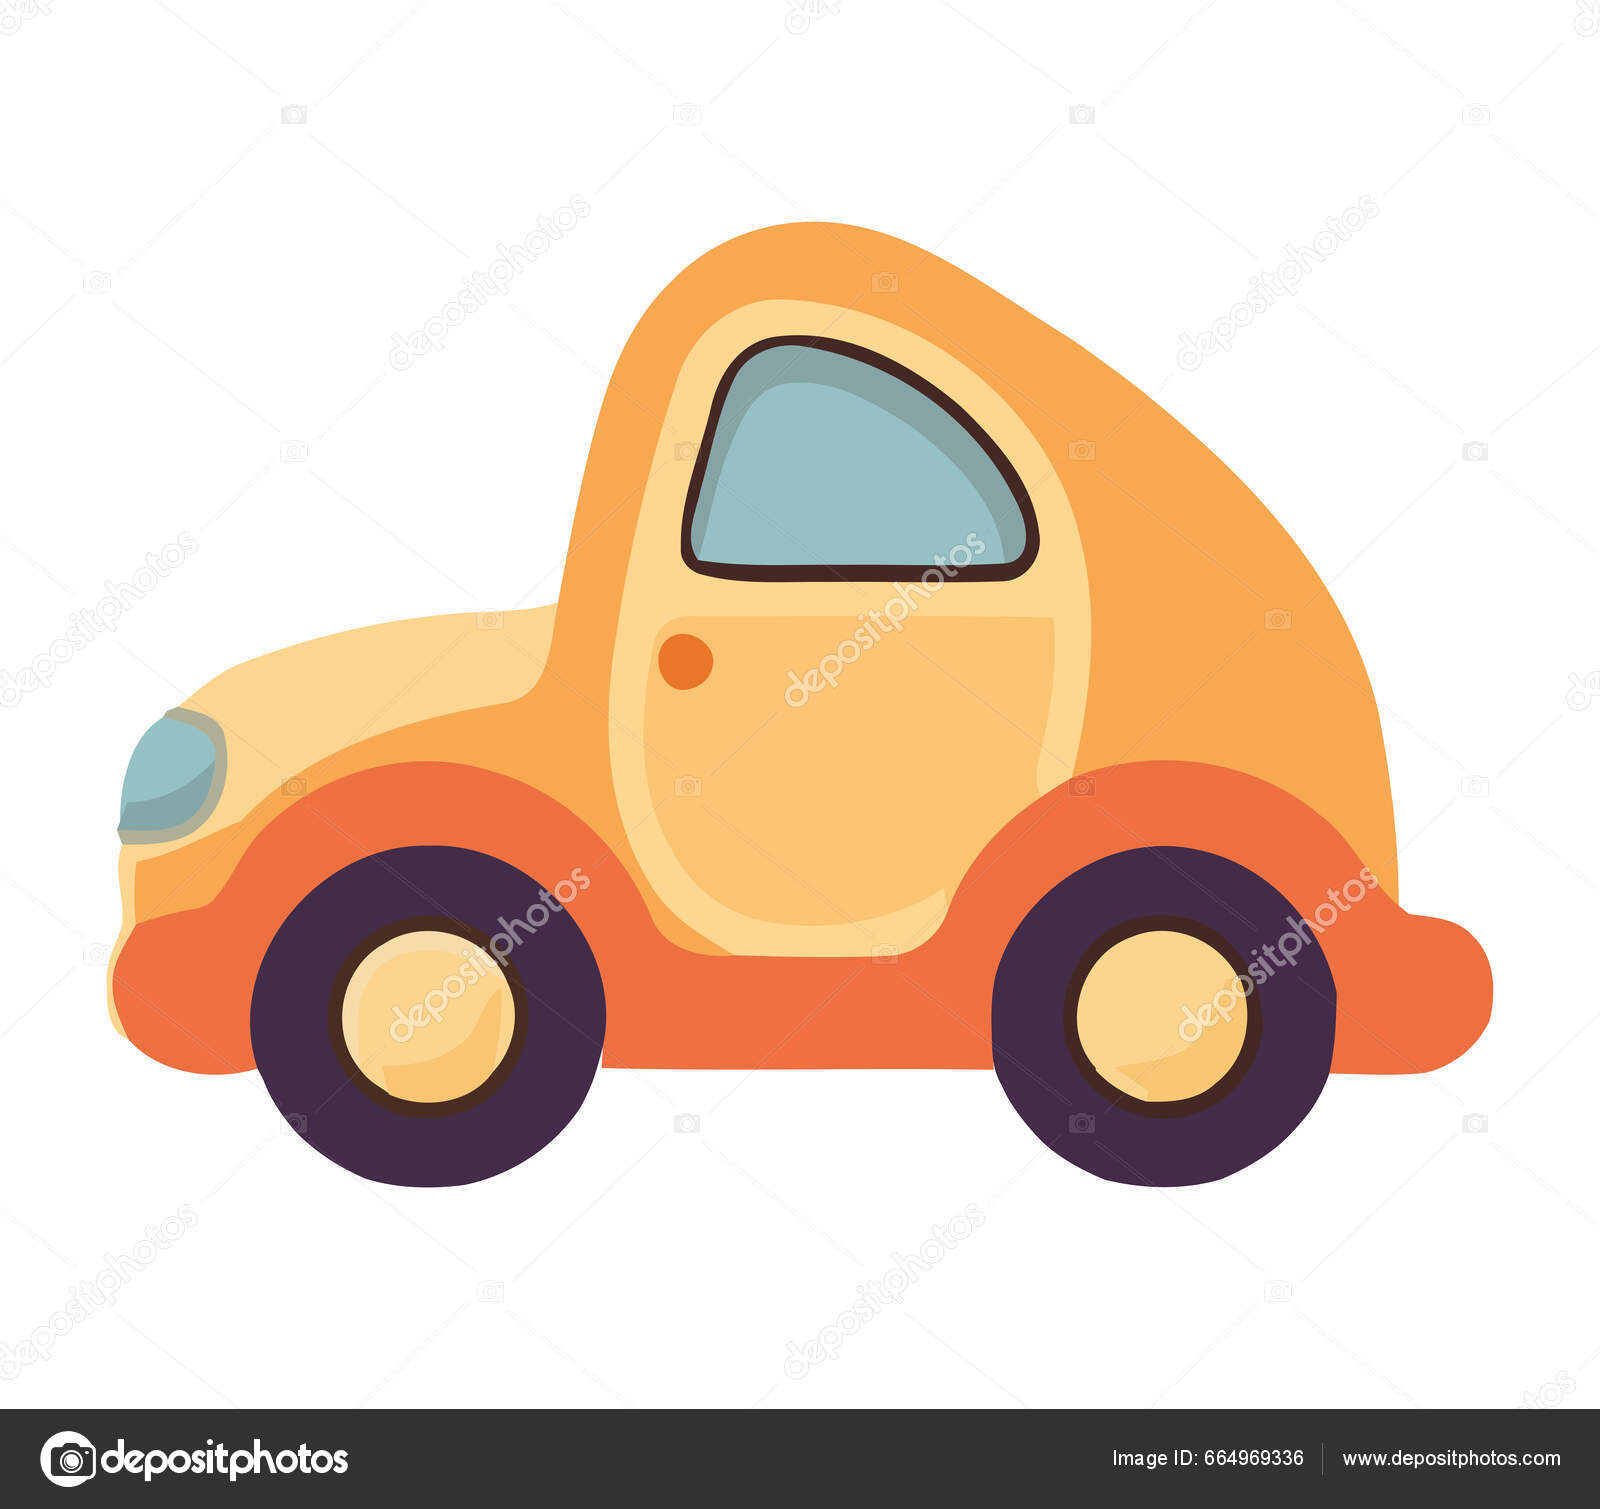 Cars icons  Car icons, Car vector, Car cartoon